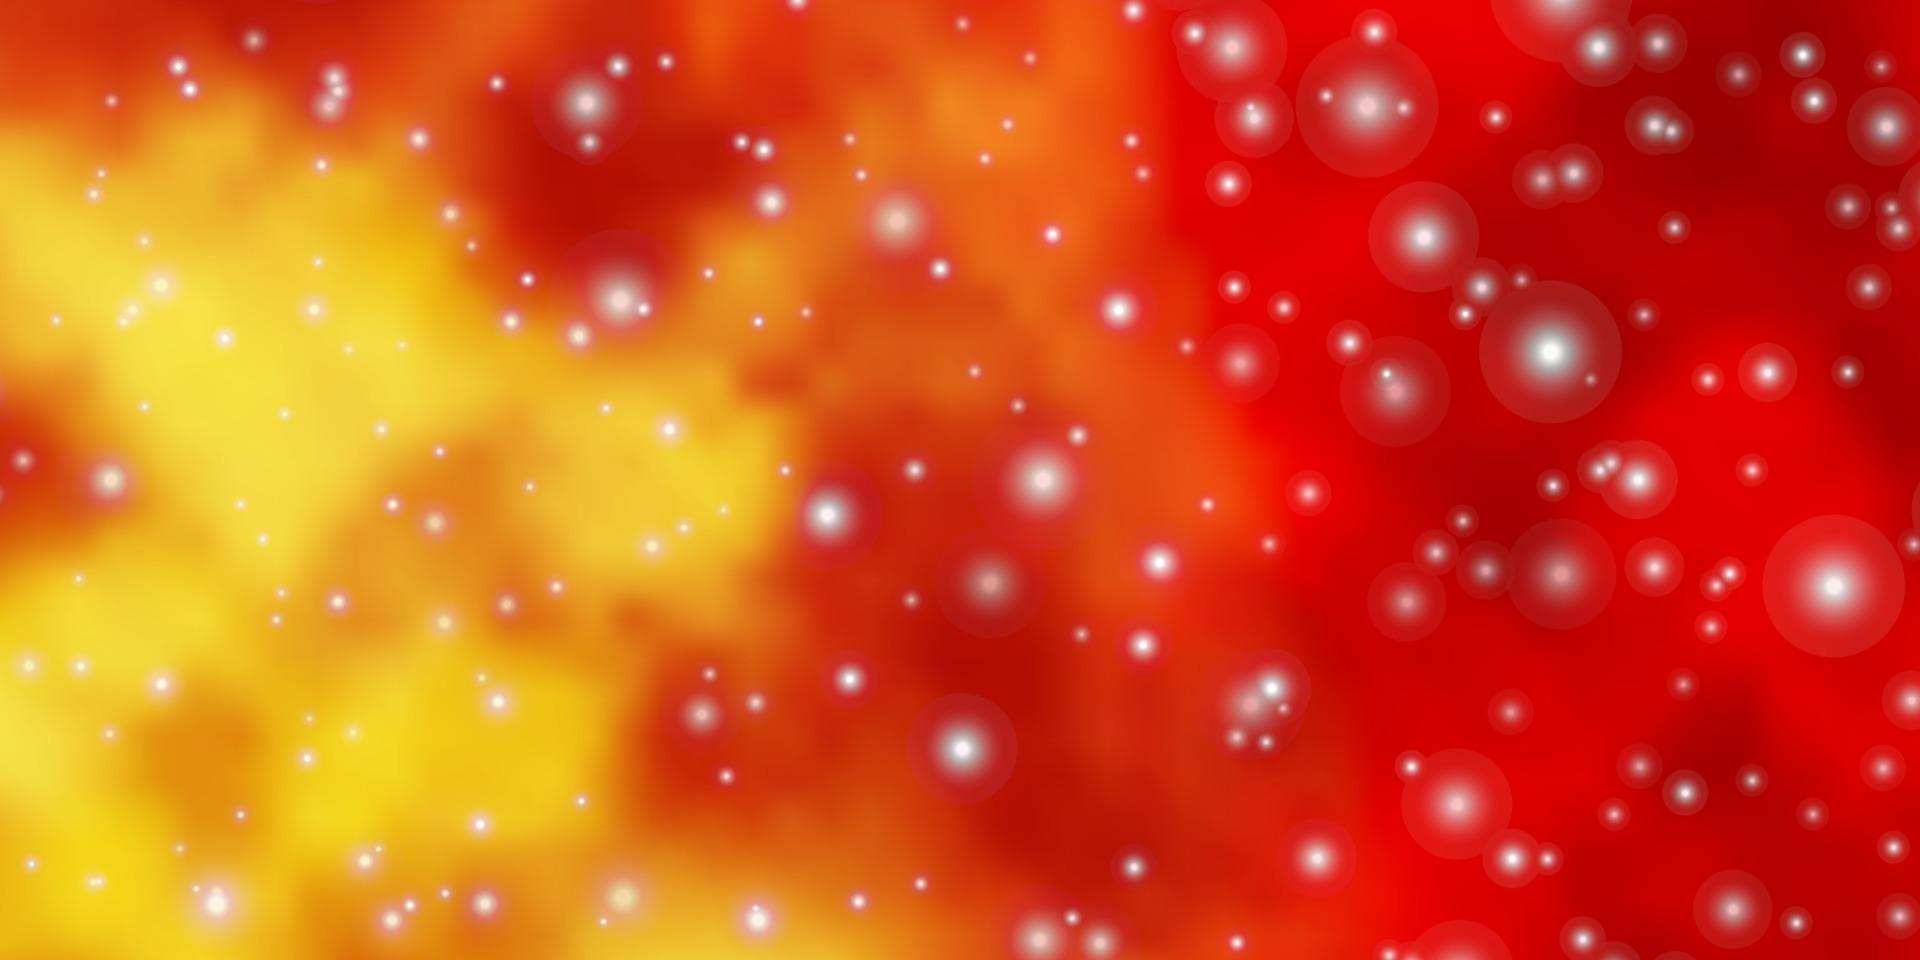 Fondo de vector naranja claro con estrellas de colores.